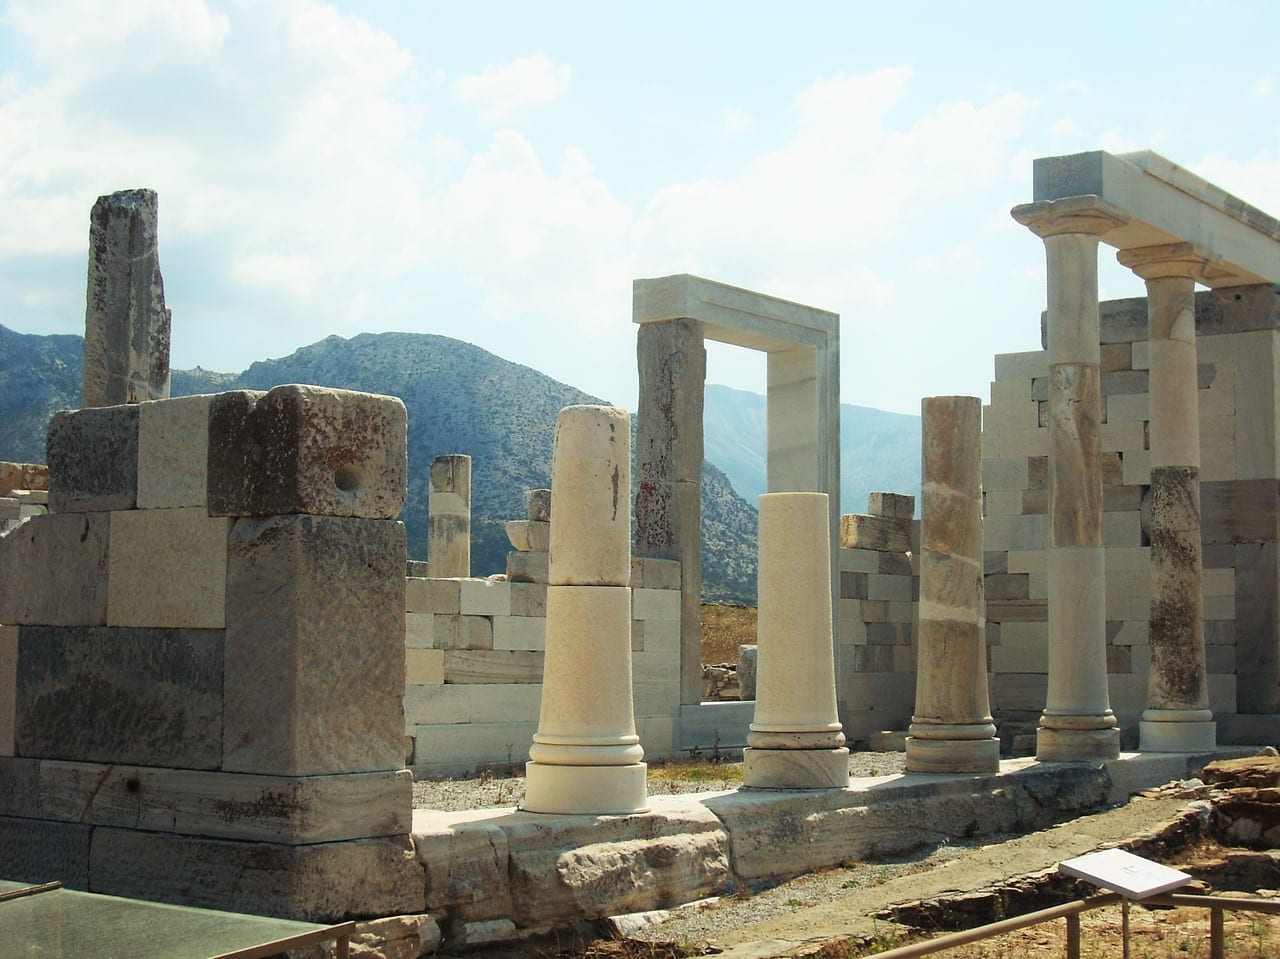 The UNESCO site of Delos in Greece